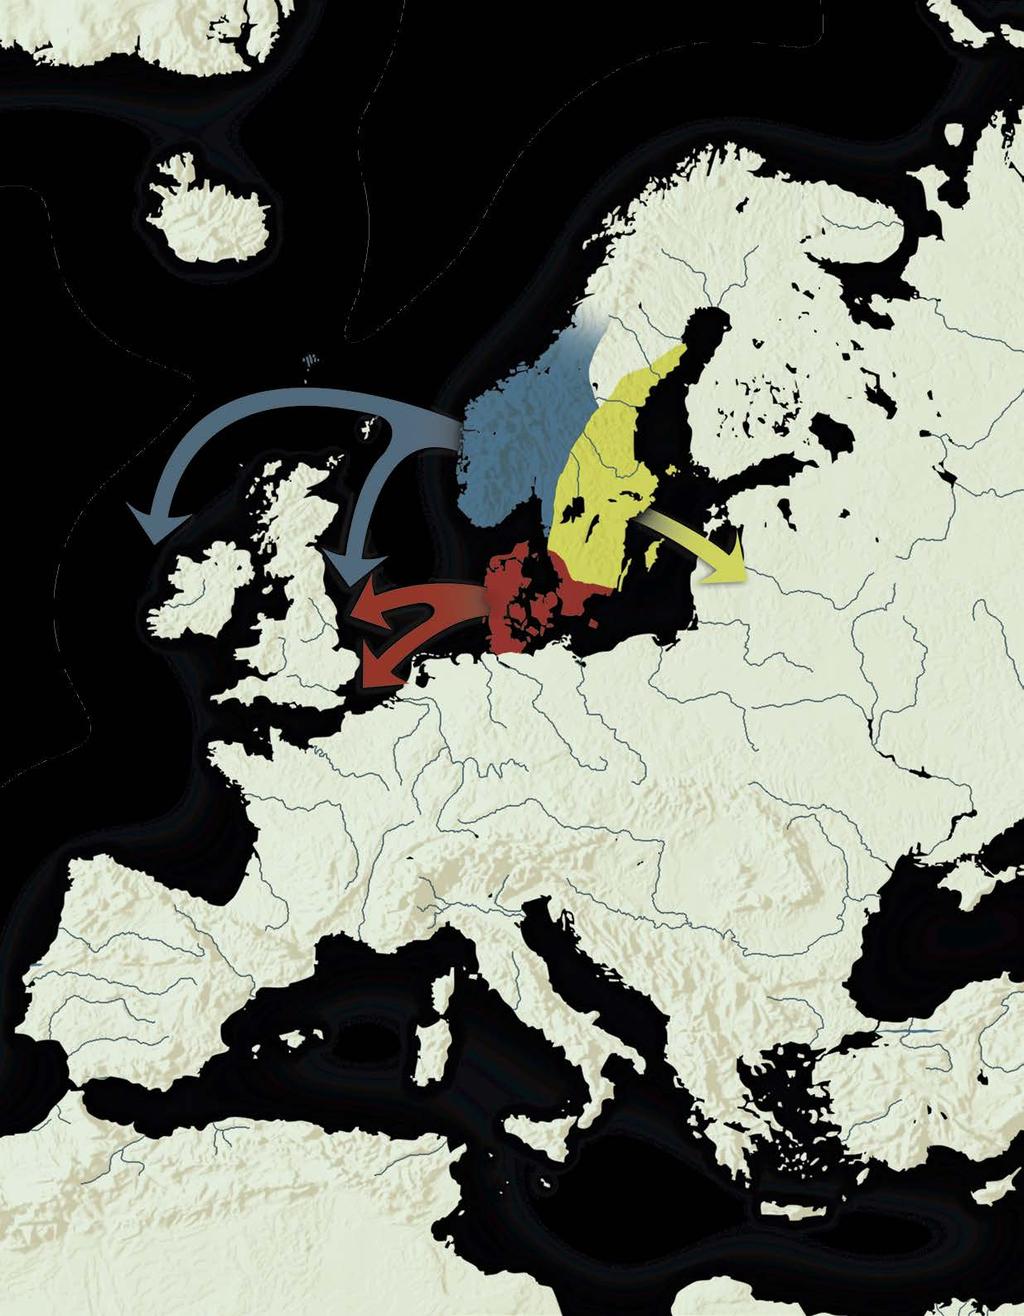 Viikinkiaika Tuhannet joutuivat orjaksi vieraalle maalle 800-luvun aikana